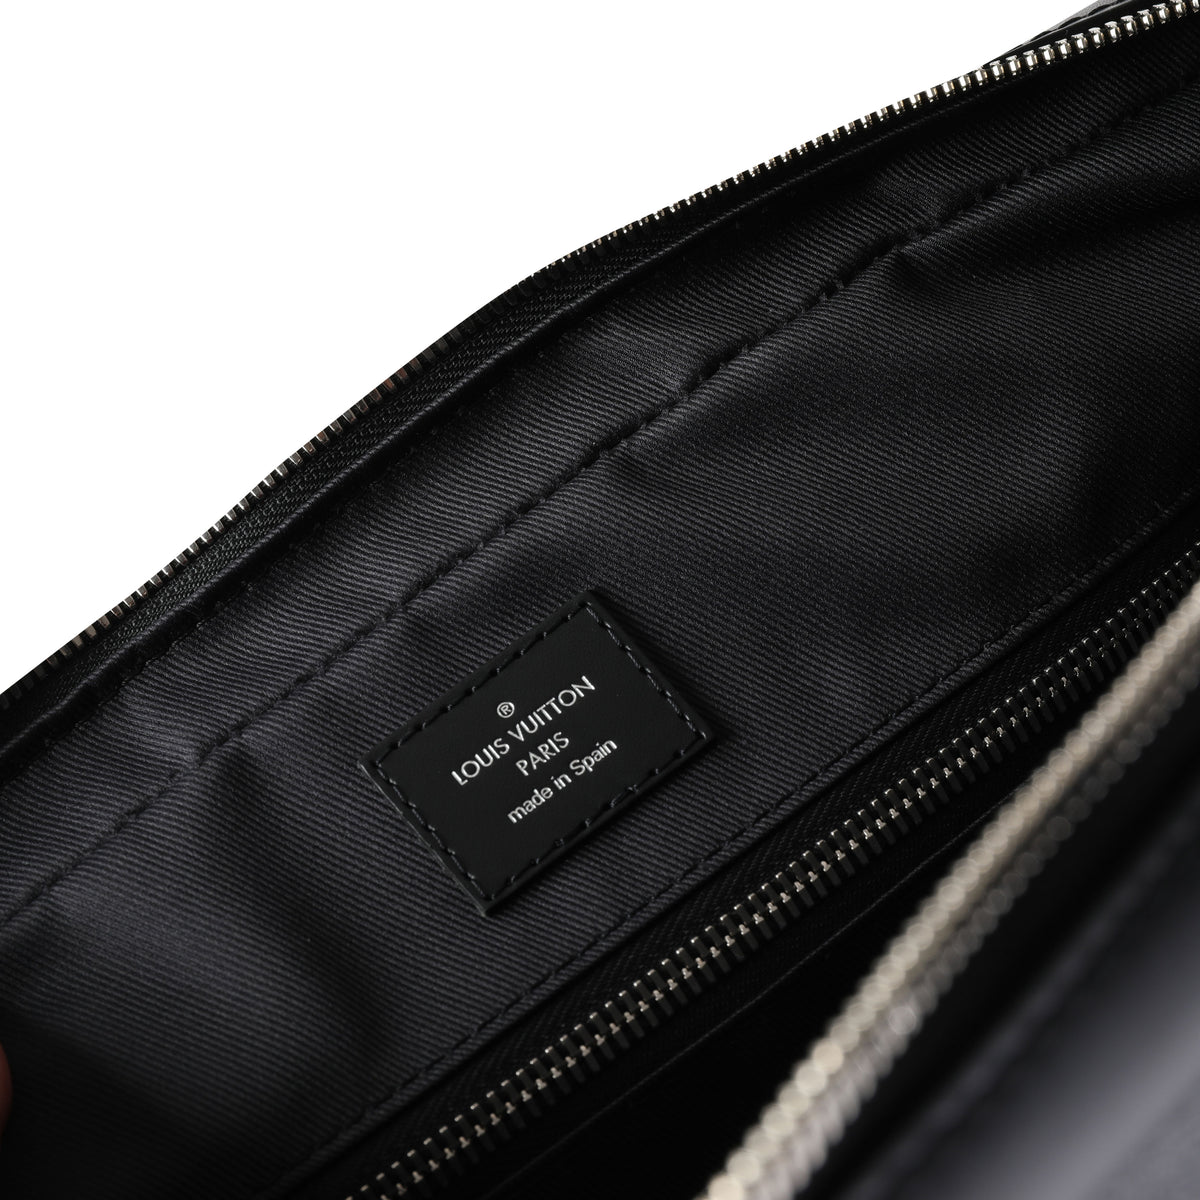 Louis-Vuitton-Damier-Cobalt-Porte-Documents-Business-Bag-N41347